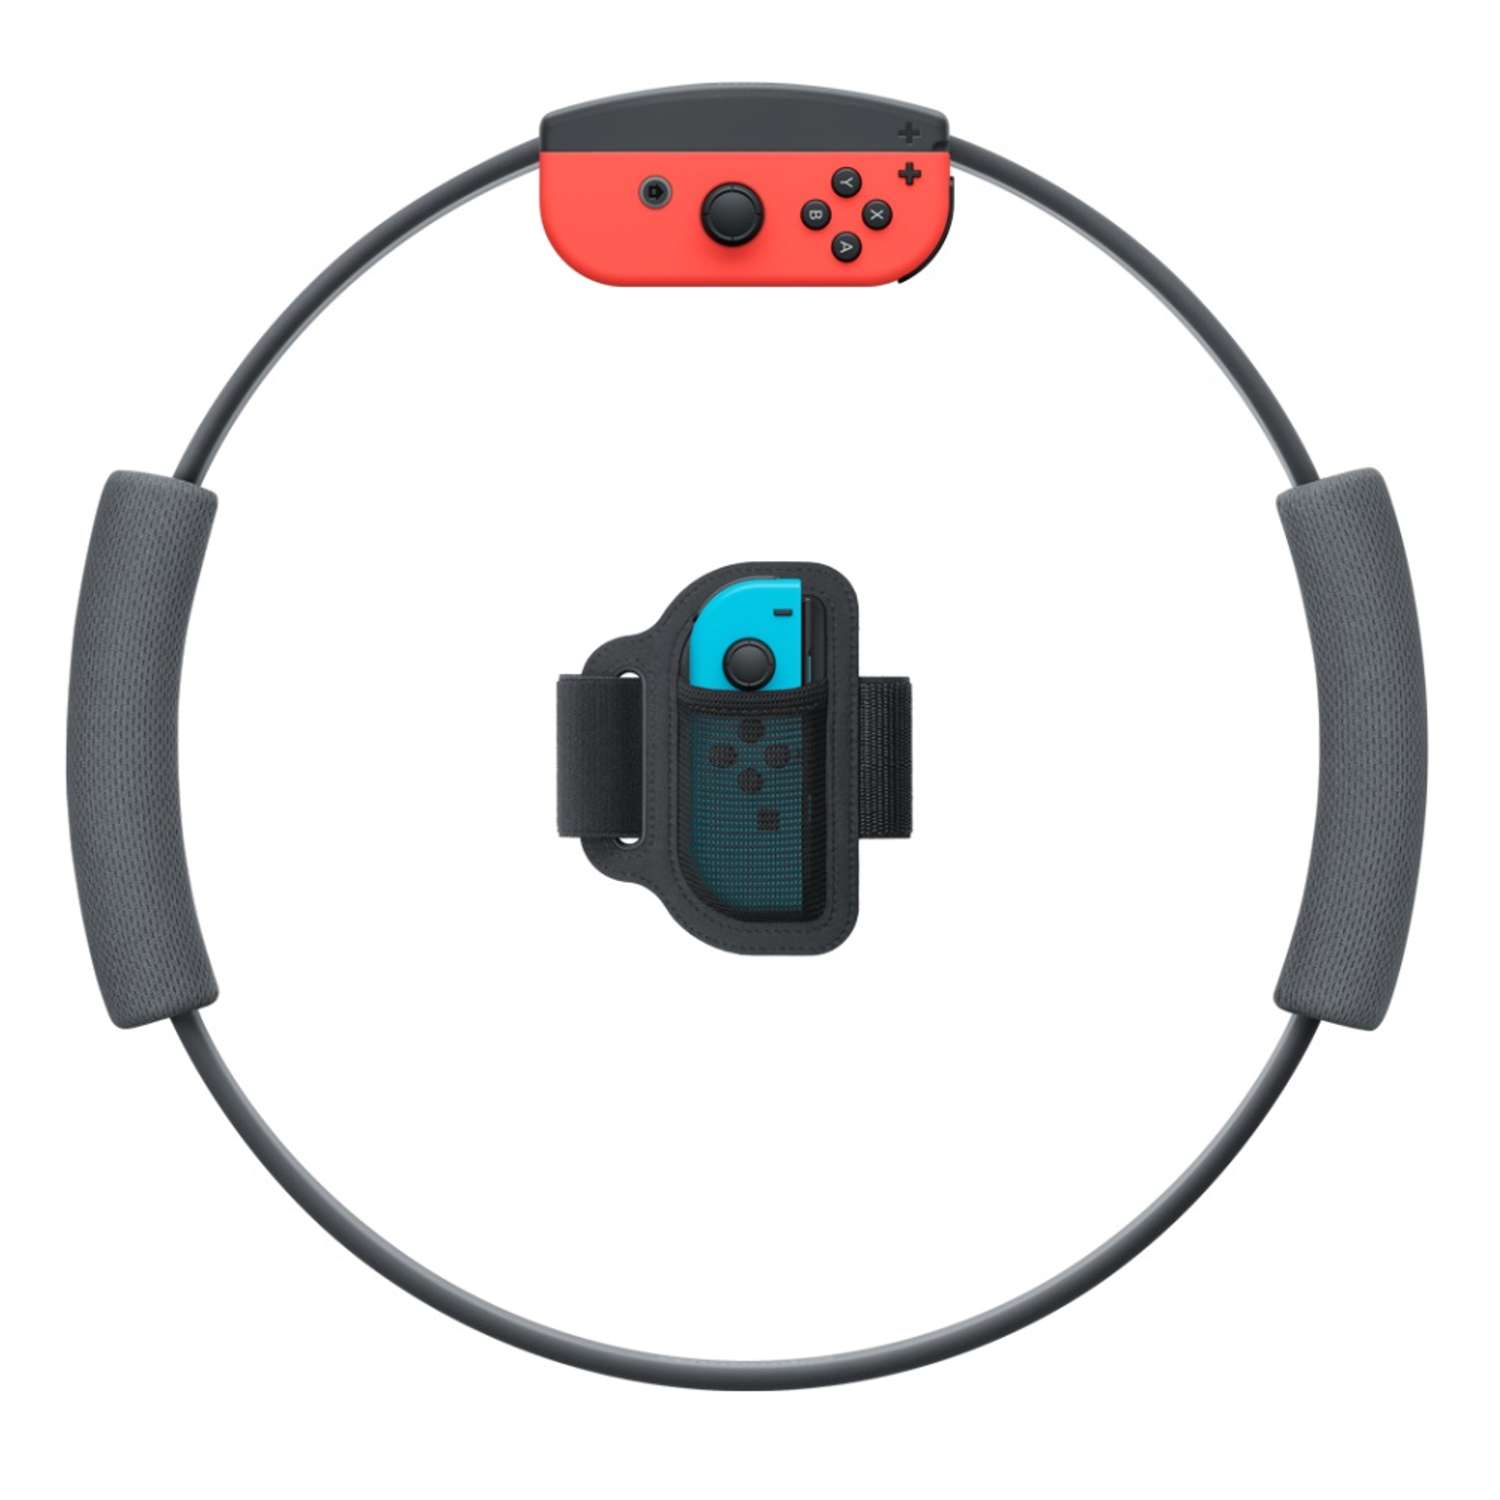 Видеоигра Nintendo Ring Fit Adventure с контроллером и ремнем для Nintendo Switch - фото 4